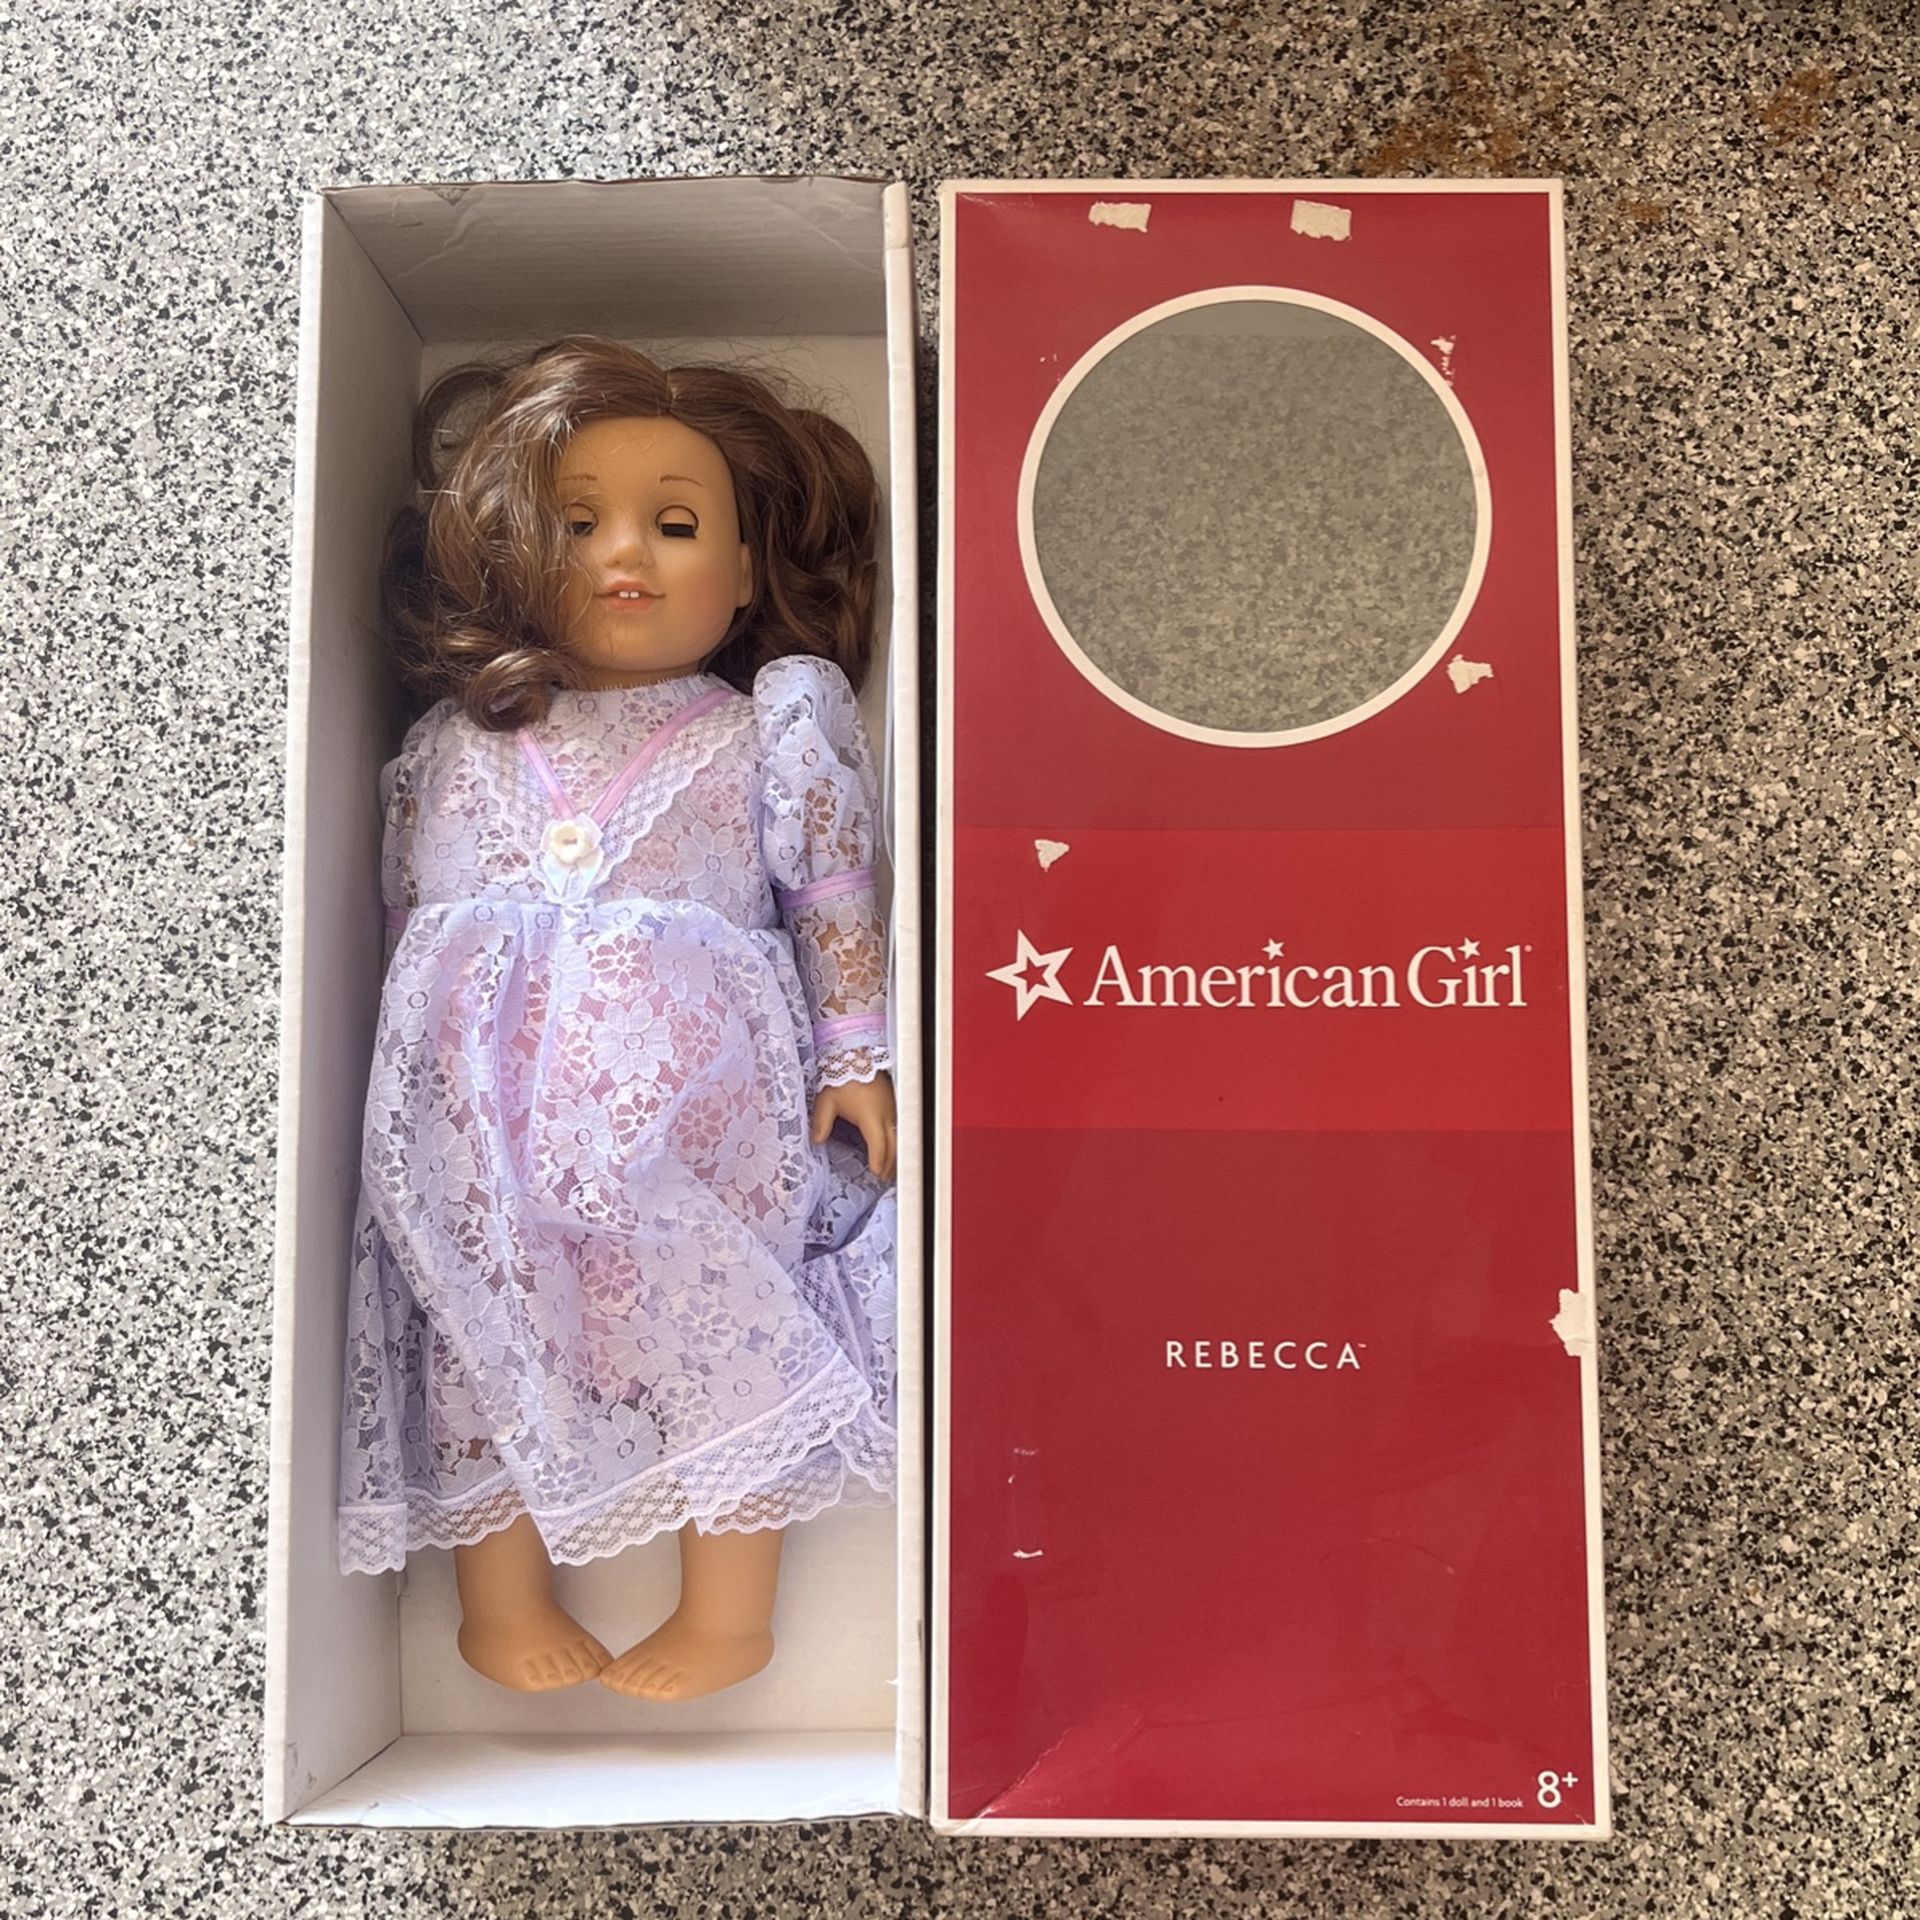 American girl doll Rebecca 